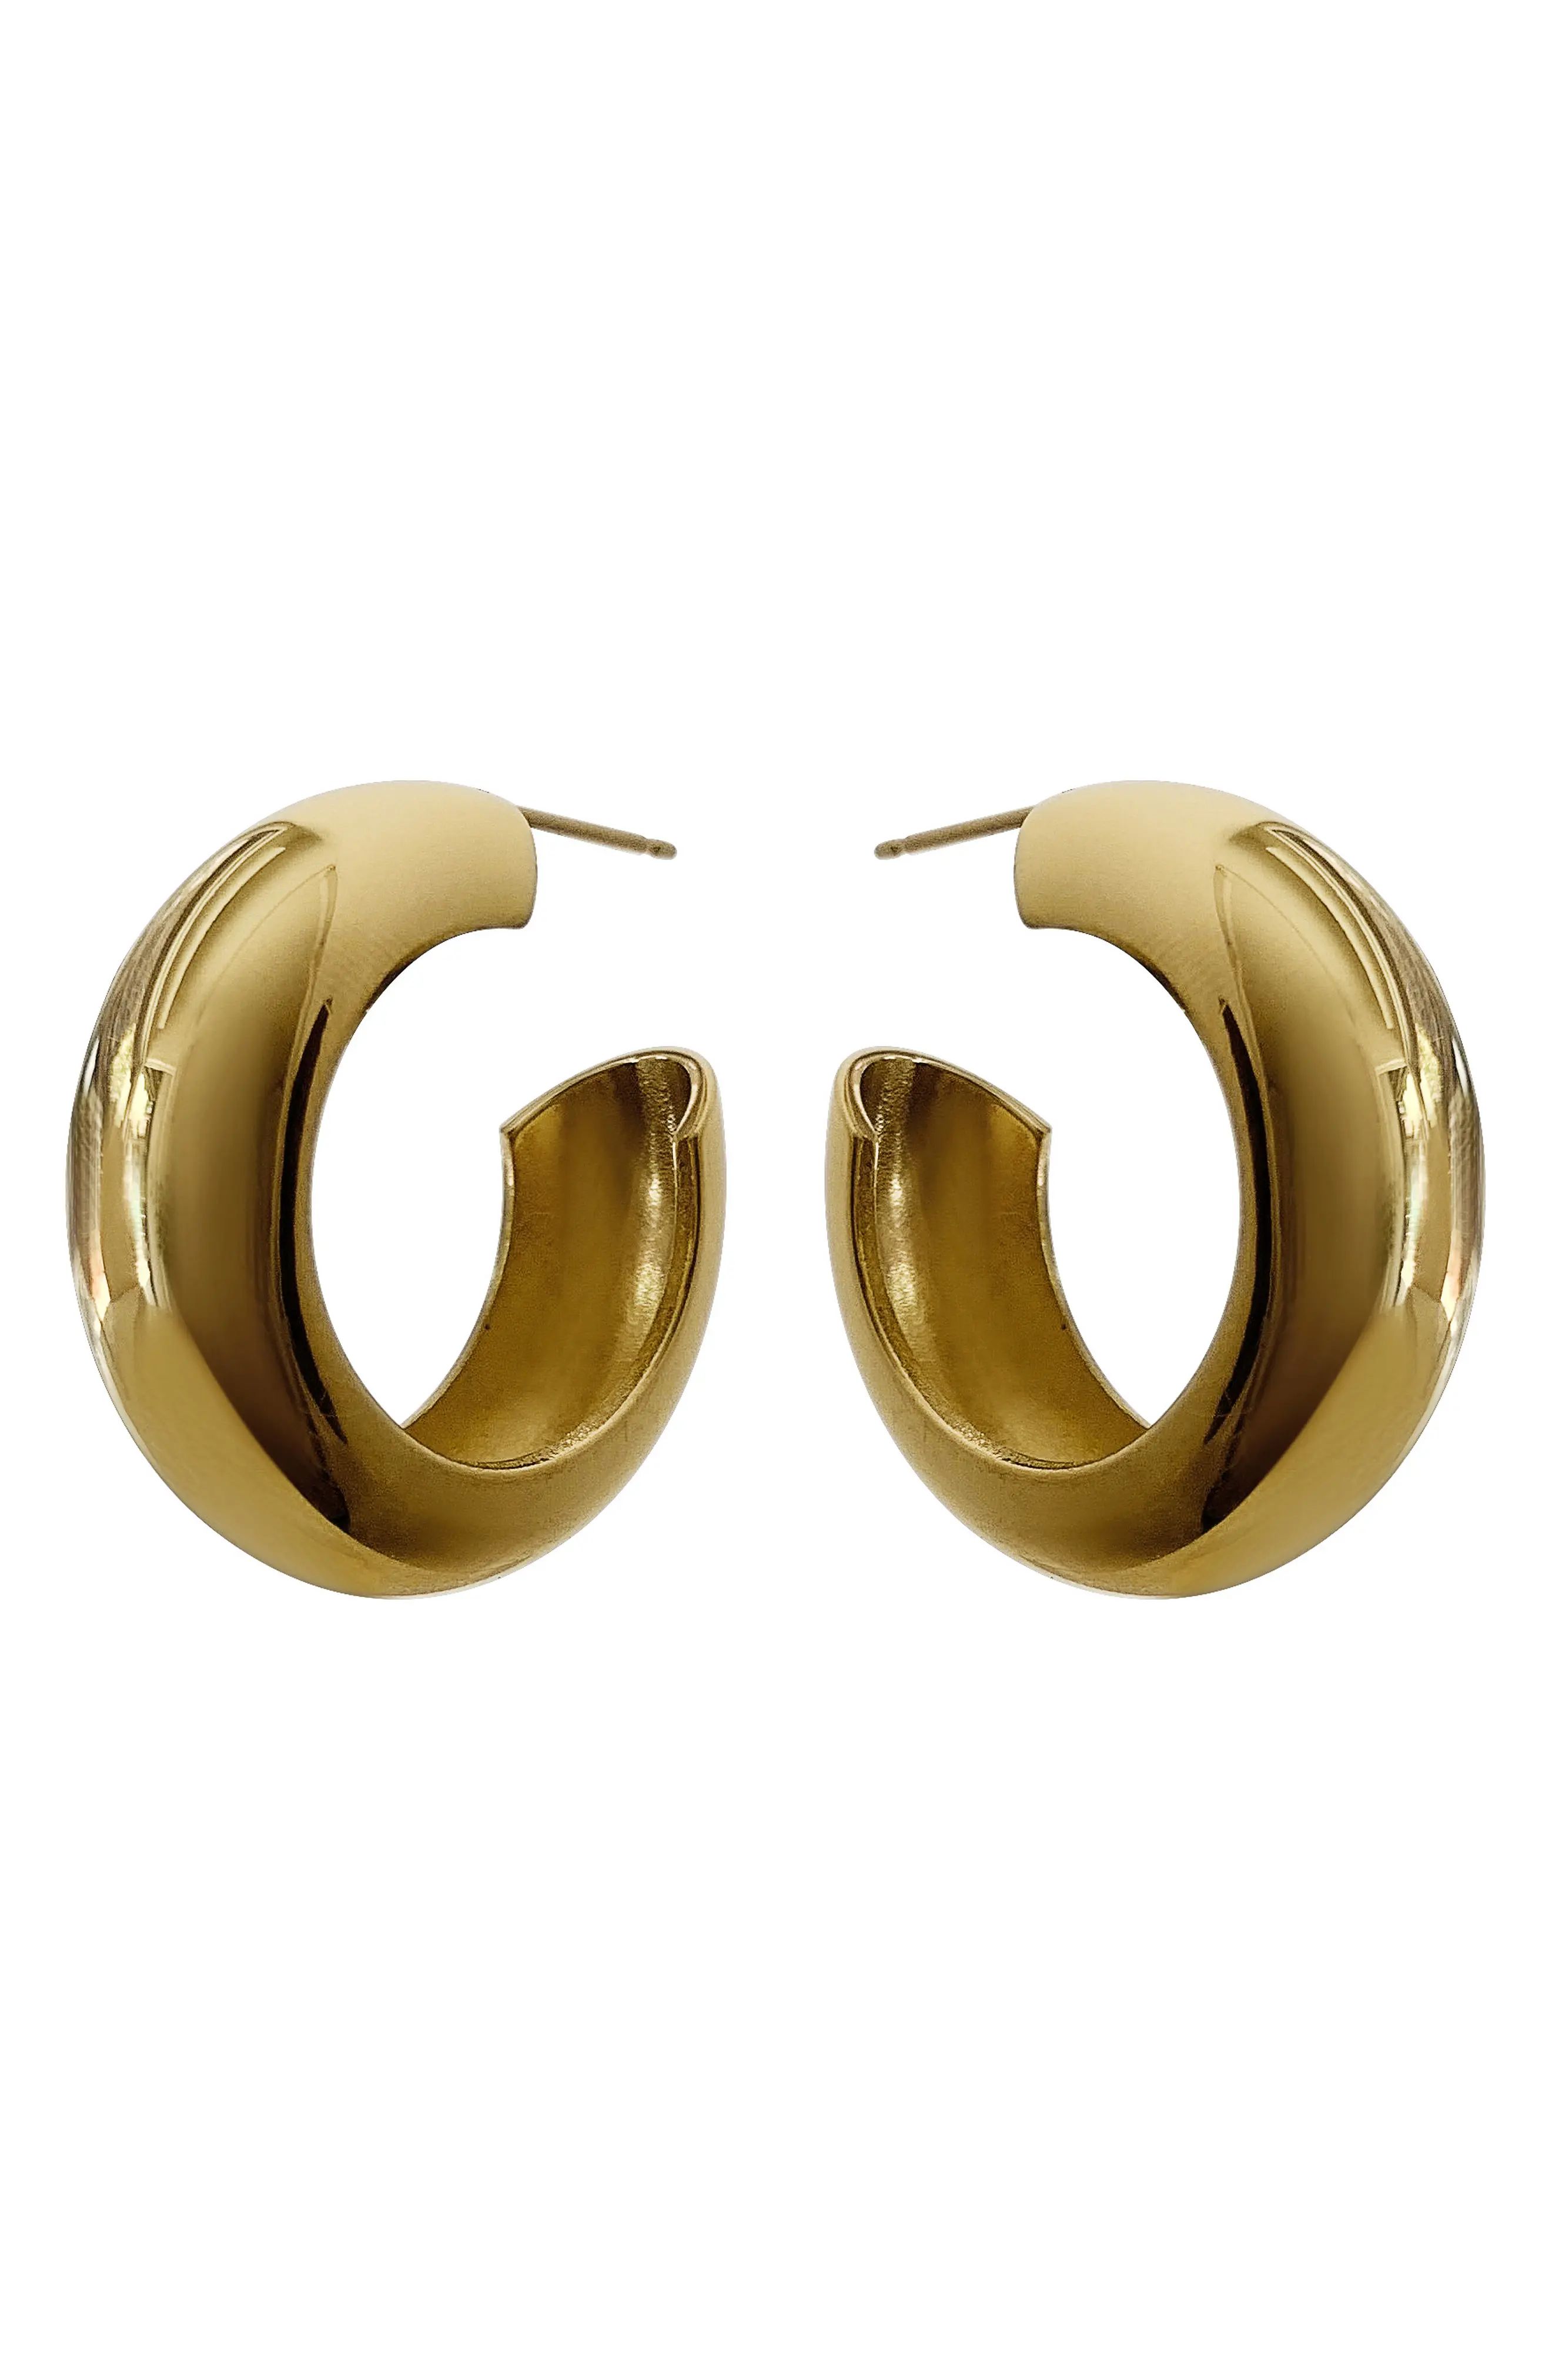 Laura Lombardi Cusp Hoop Earrings in Brass at Nordstrom | Nordstrom